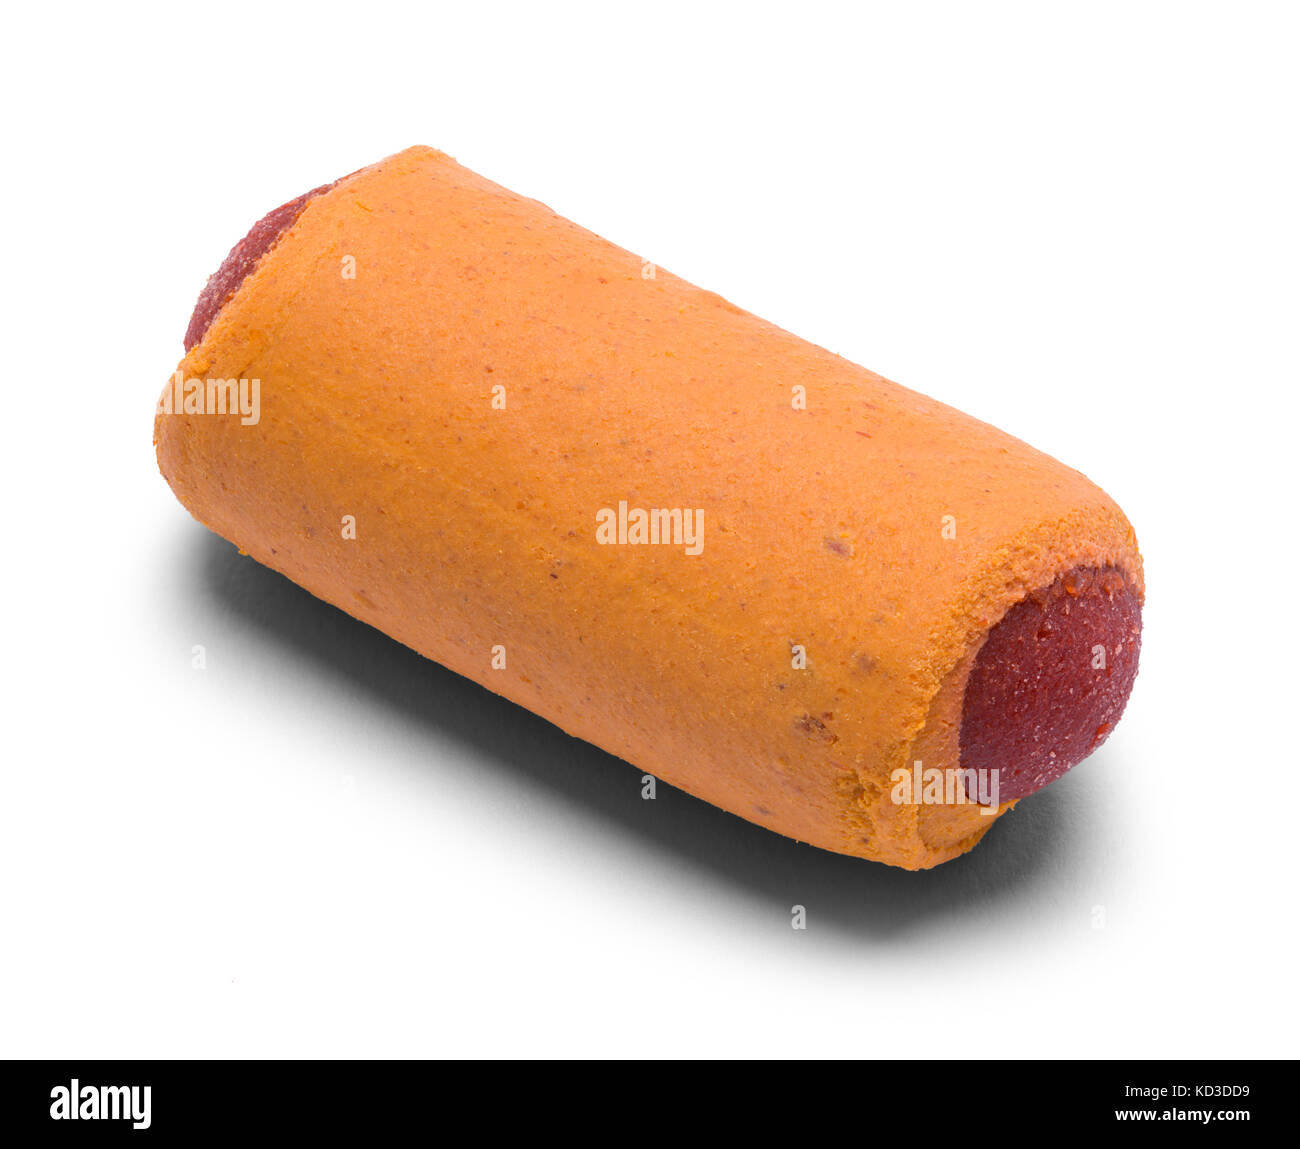 Hot Dog Treat Isolated on a White Background. Stock Photo